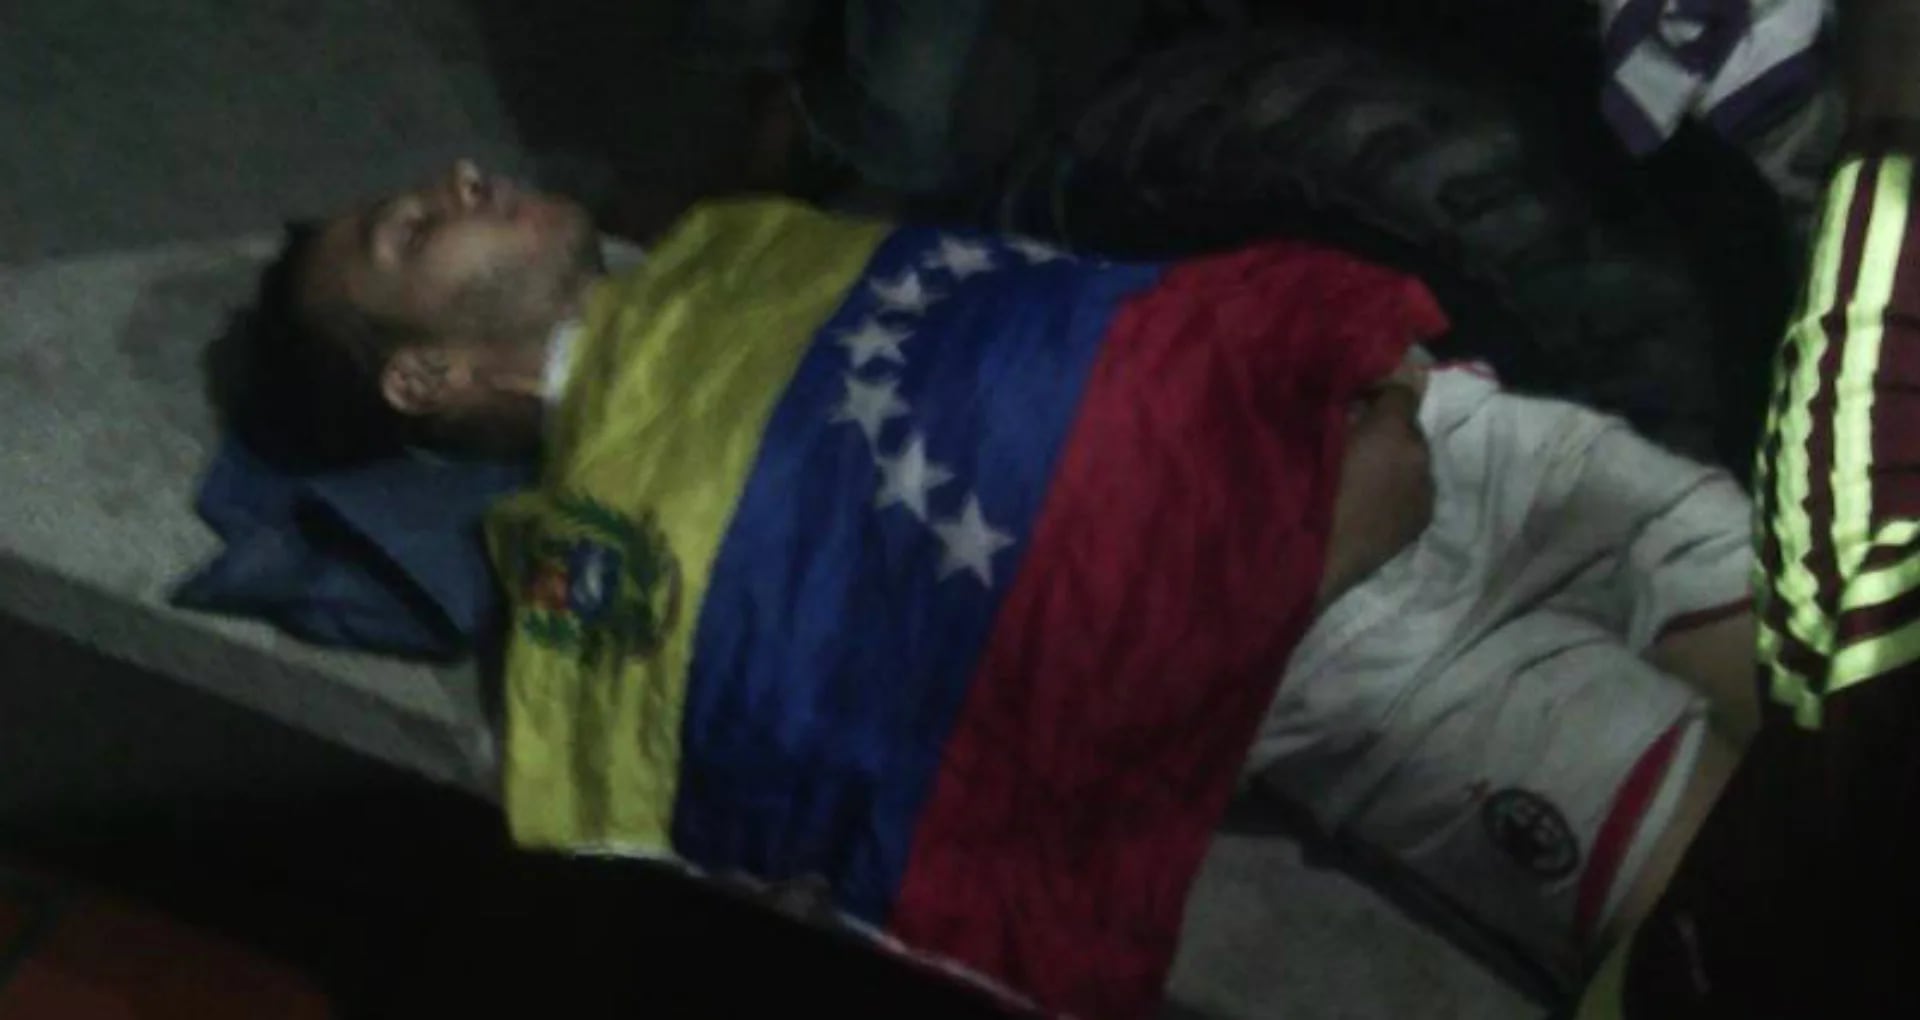 Ya son más de 70 los muertos por la brutal represión chavista